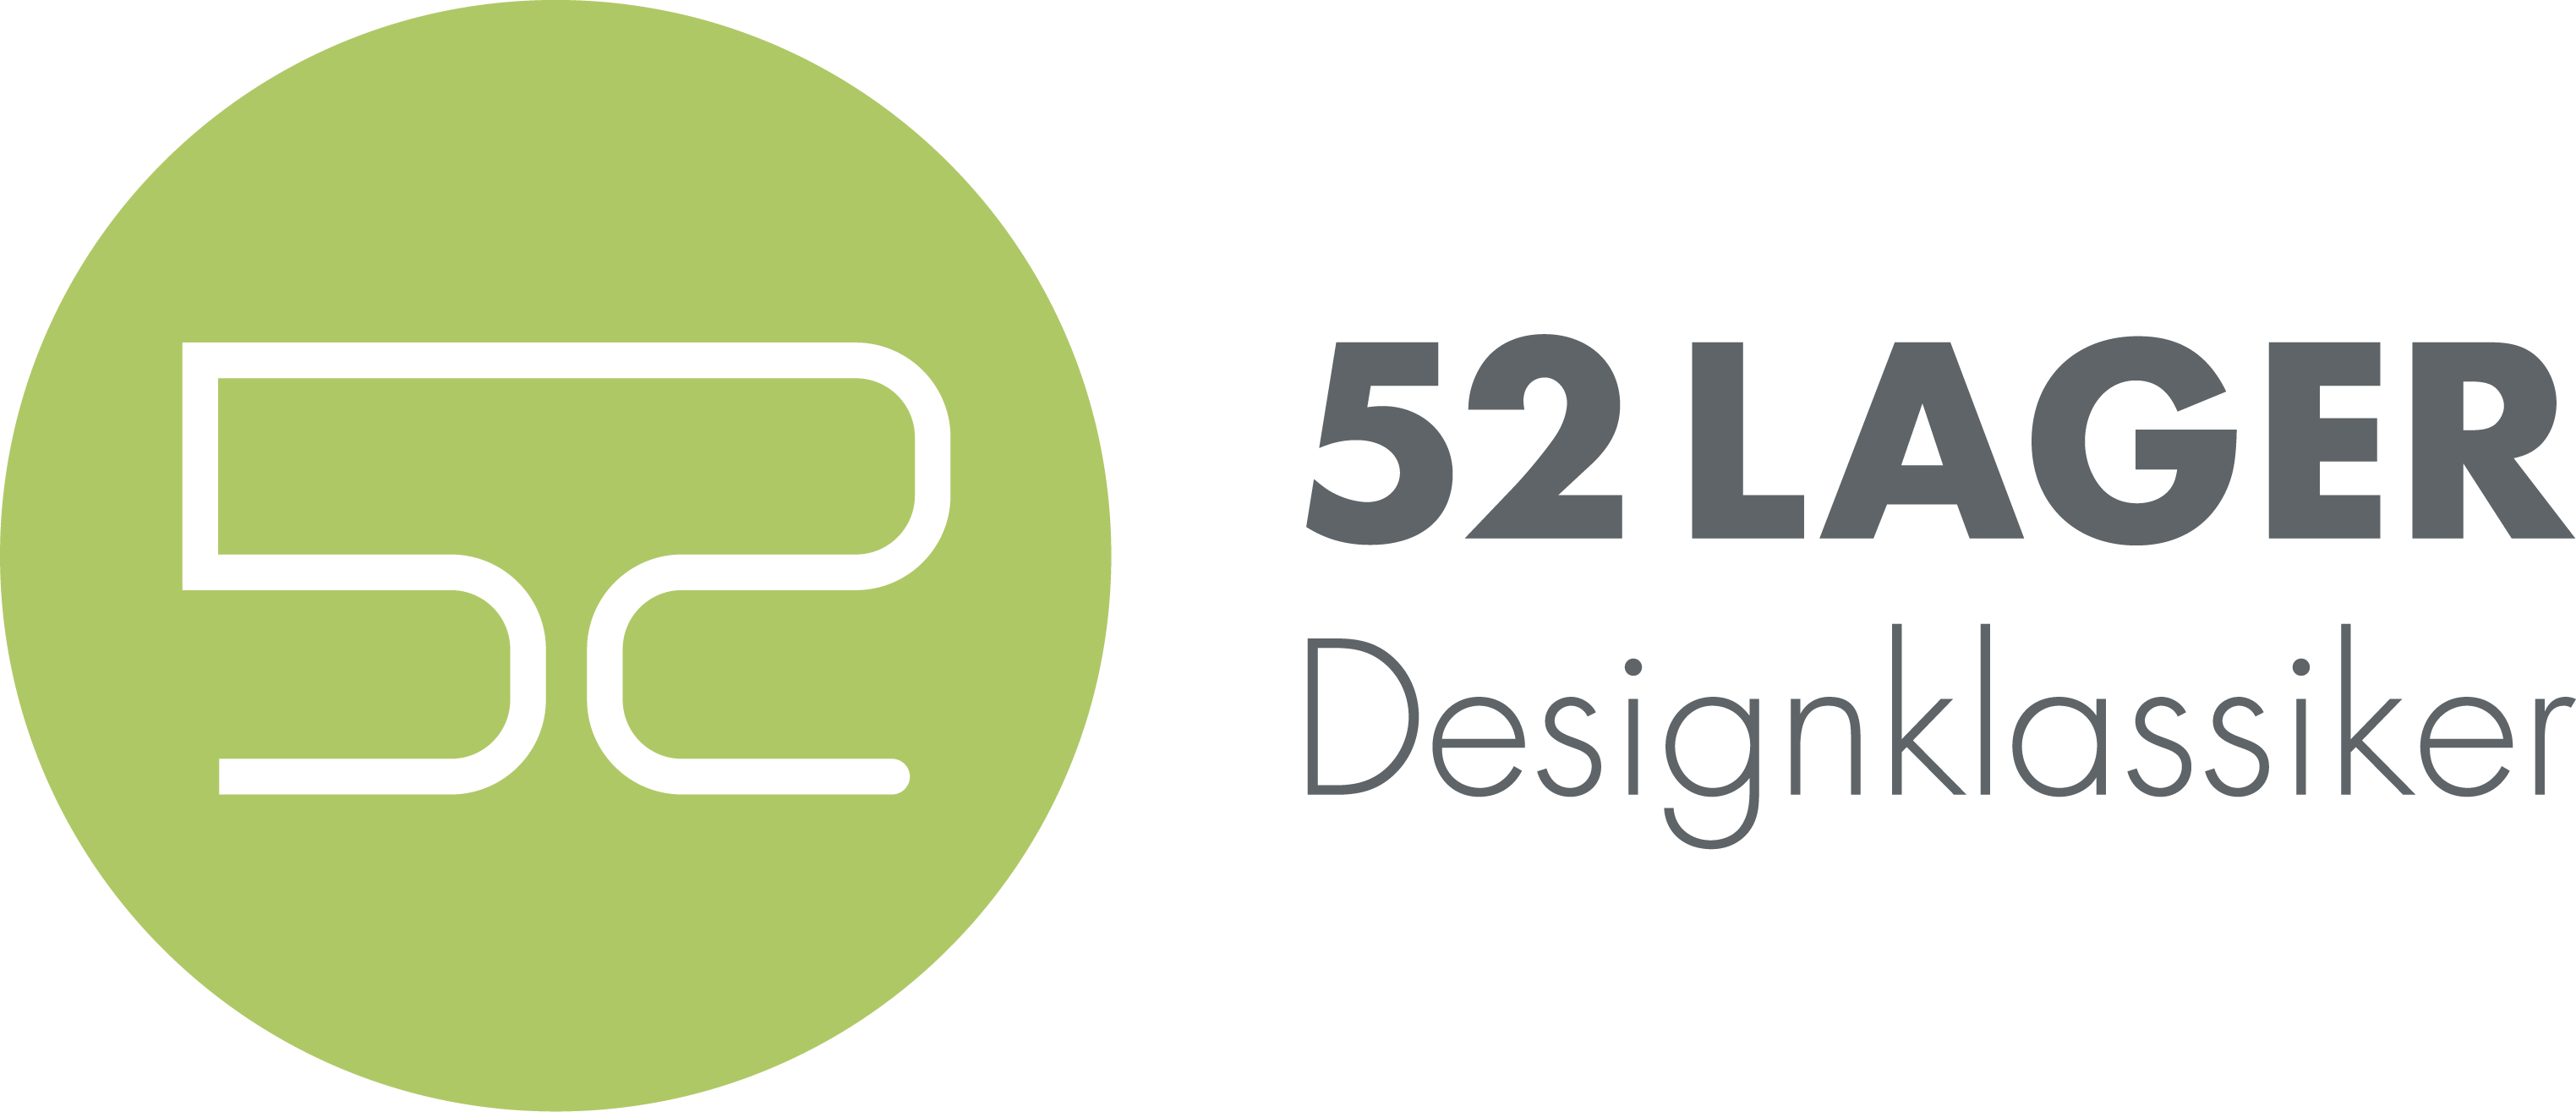 52Lager - Designklassiker - Reto Andri